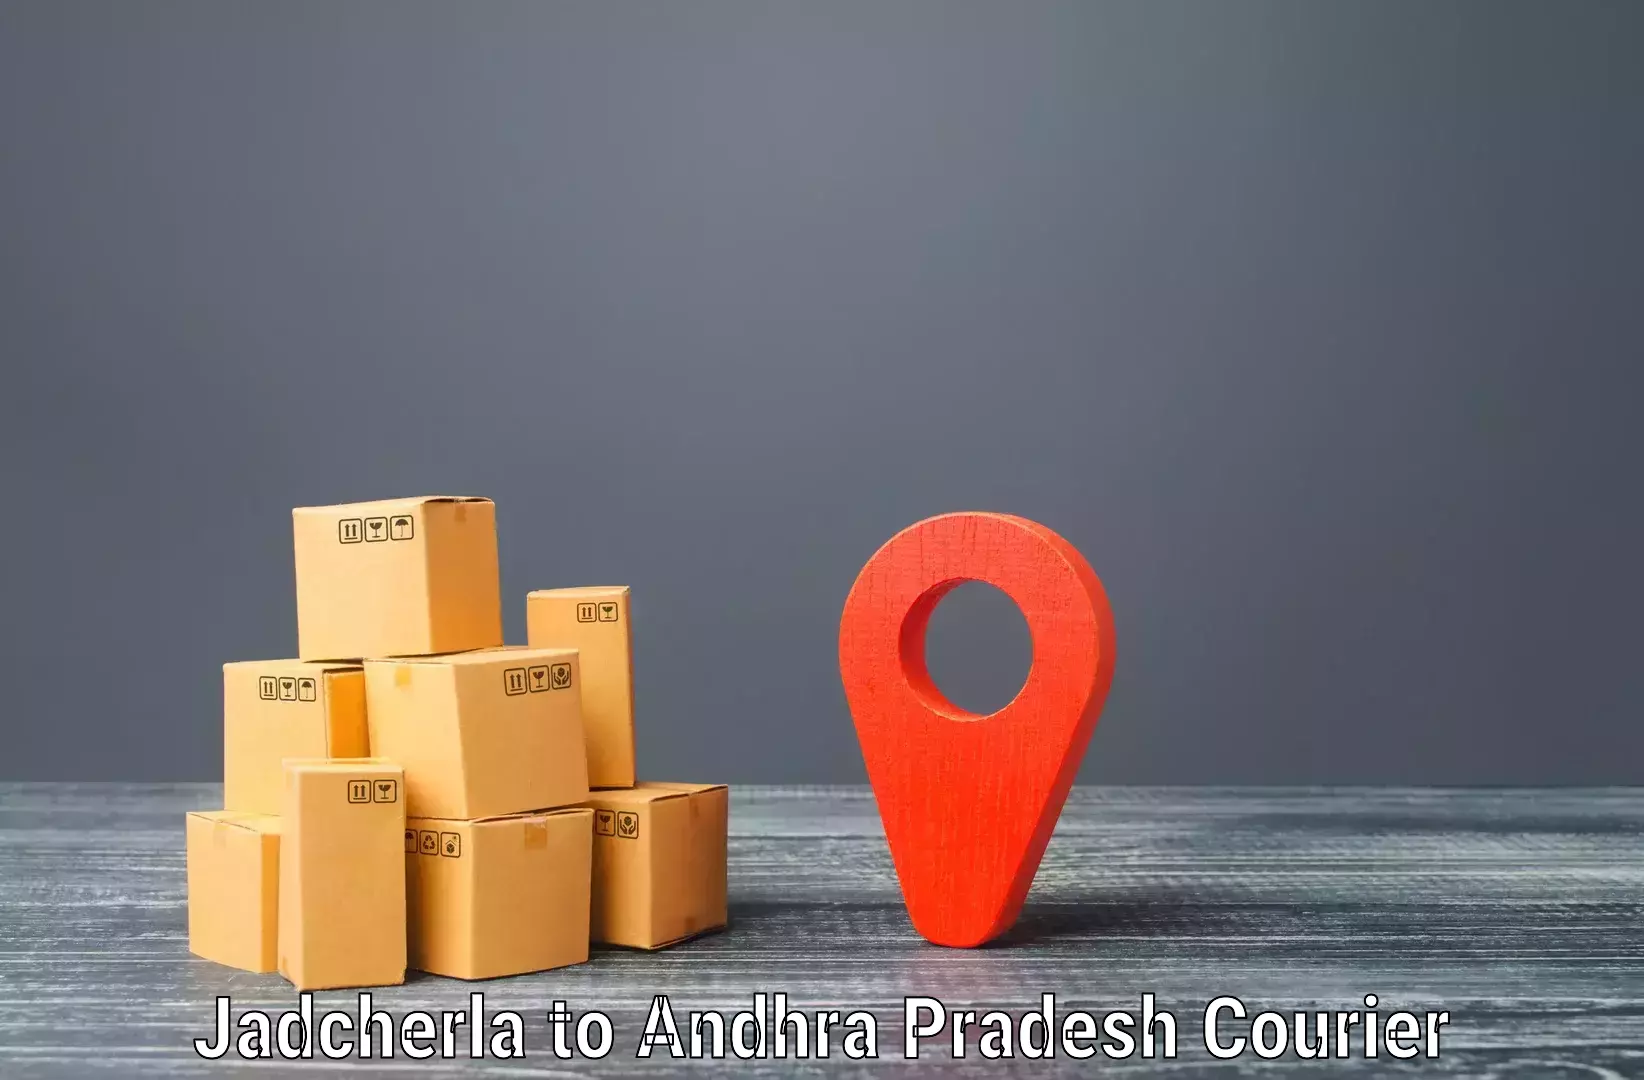 Nationwide courier service in Jadcherla to Etcherla